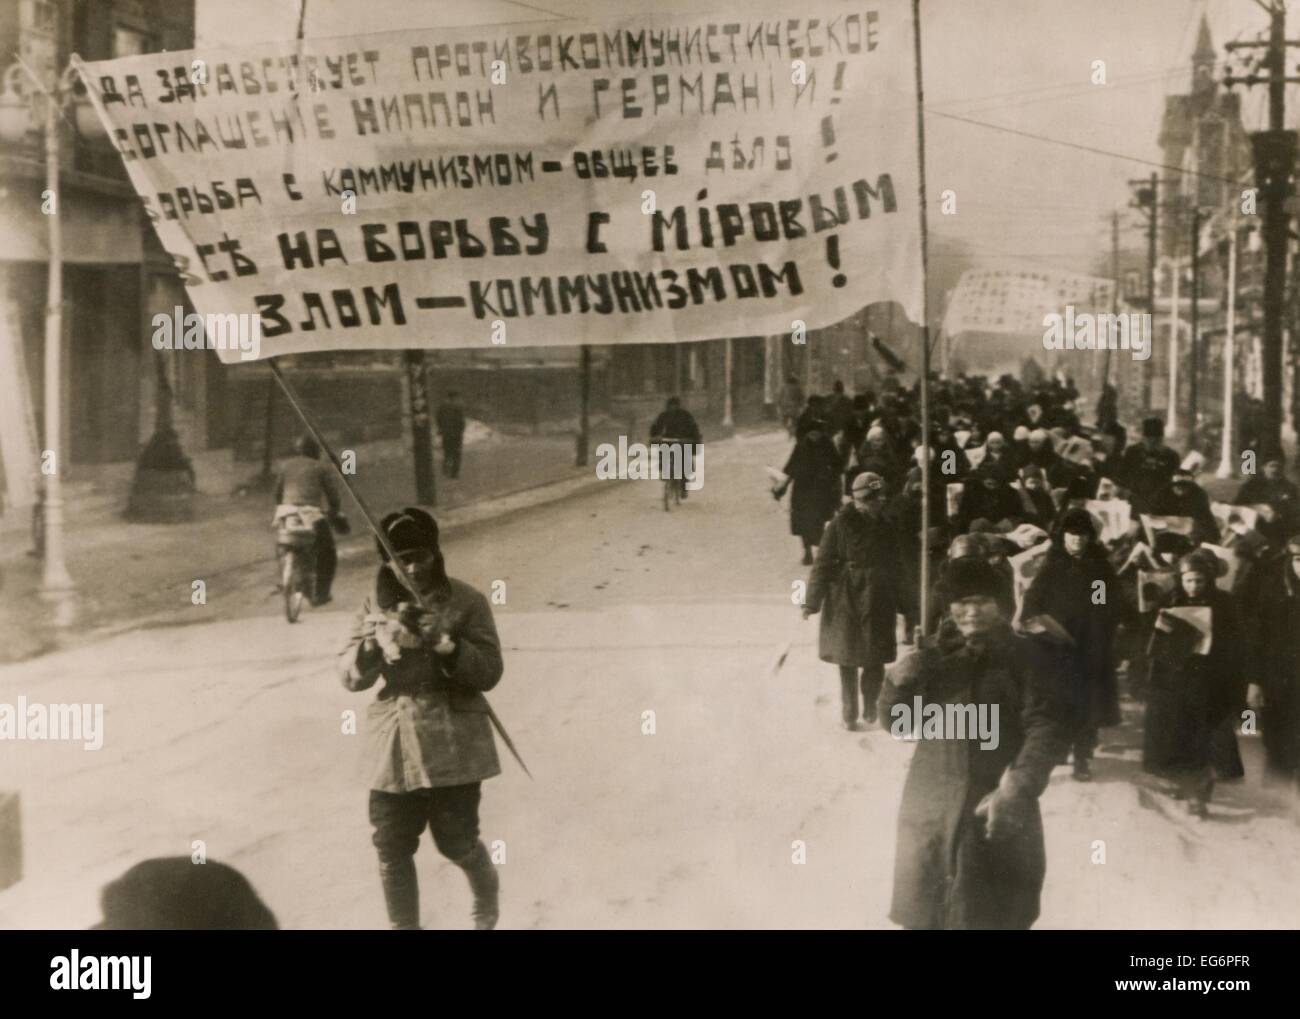 White russi manifestano a sostegno dell'Tedesco-giapponese co-operazione patto contro i comunisti. Hsinking, Manchukuo. Dic. Foto Stock